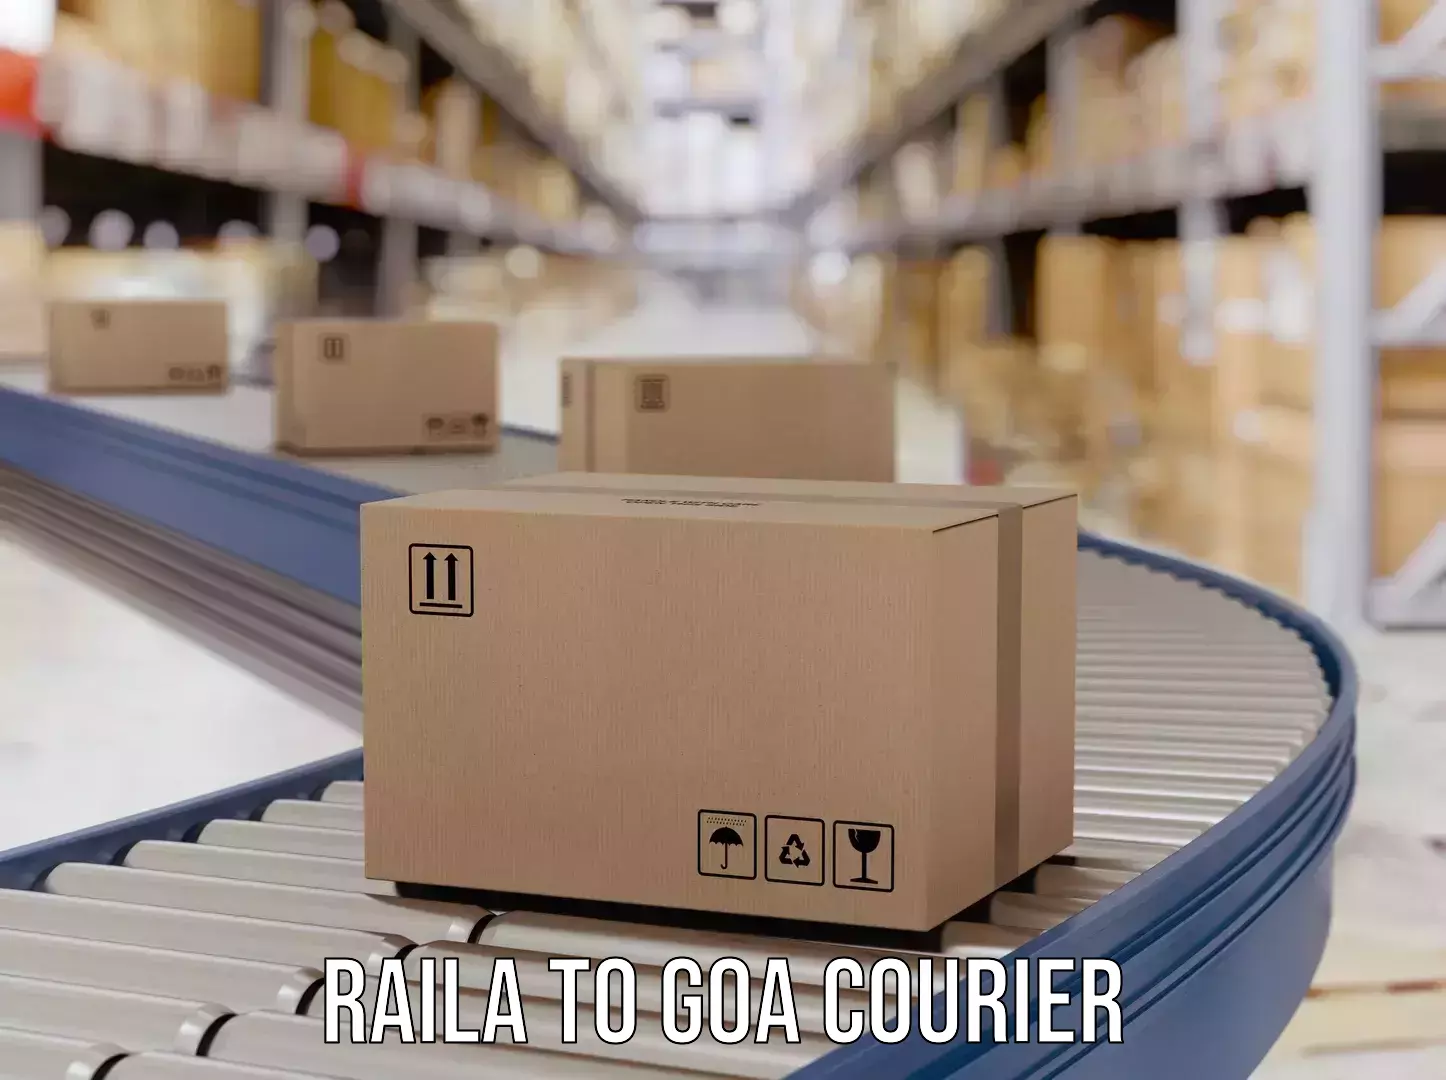 Digital courier platforms Raila to NIT Goa